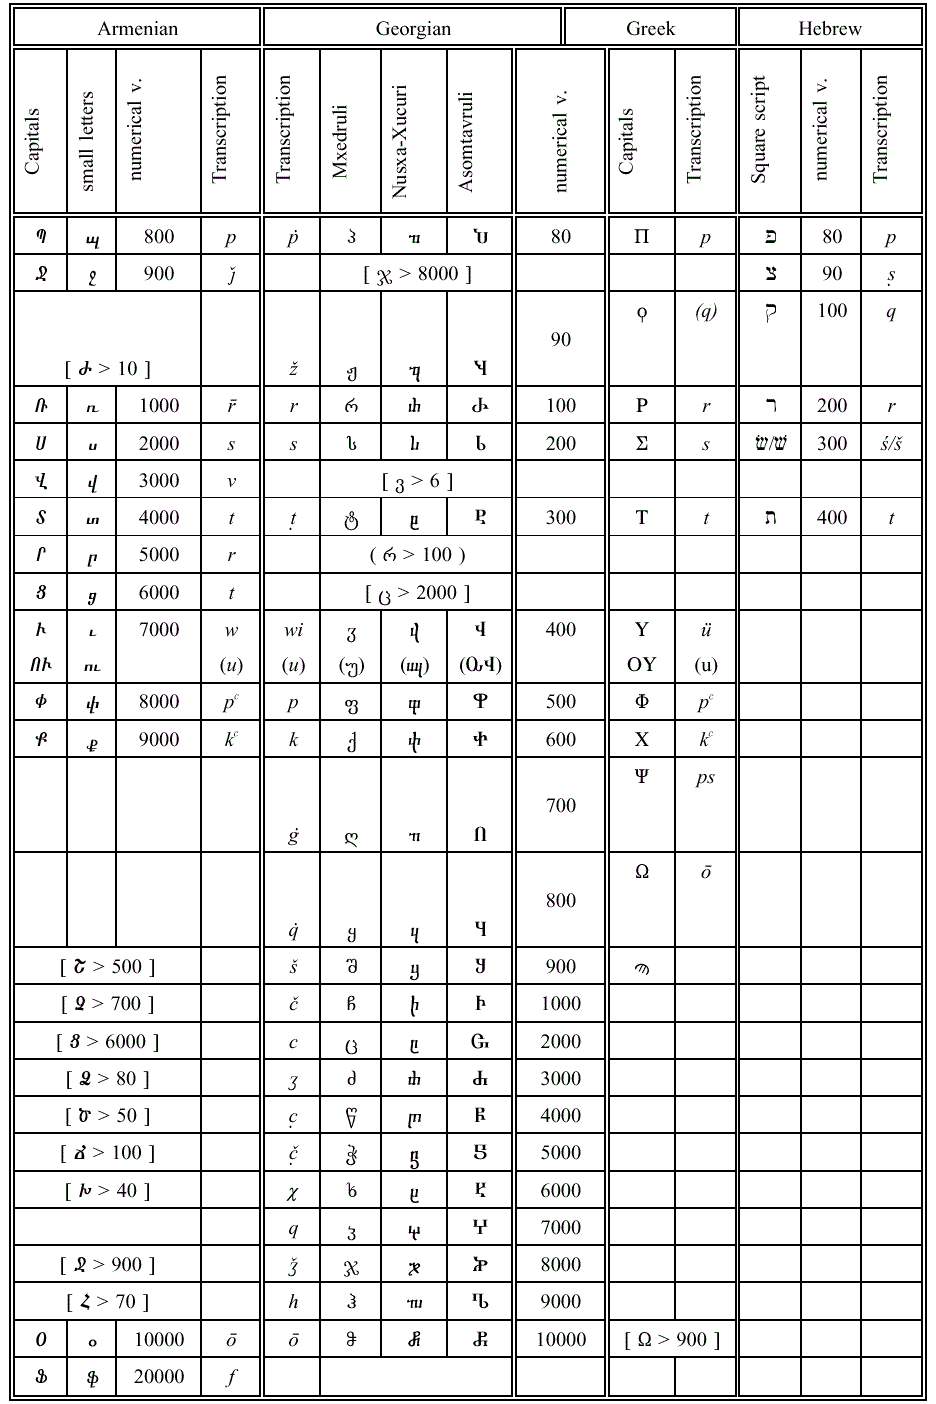 Сравнение армянского, грузинского, греческого и еврейского алфавитов